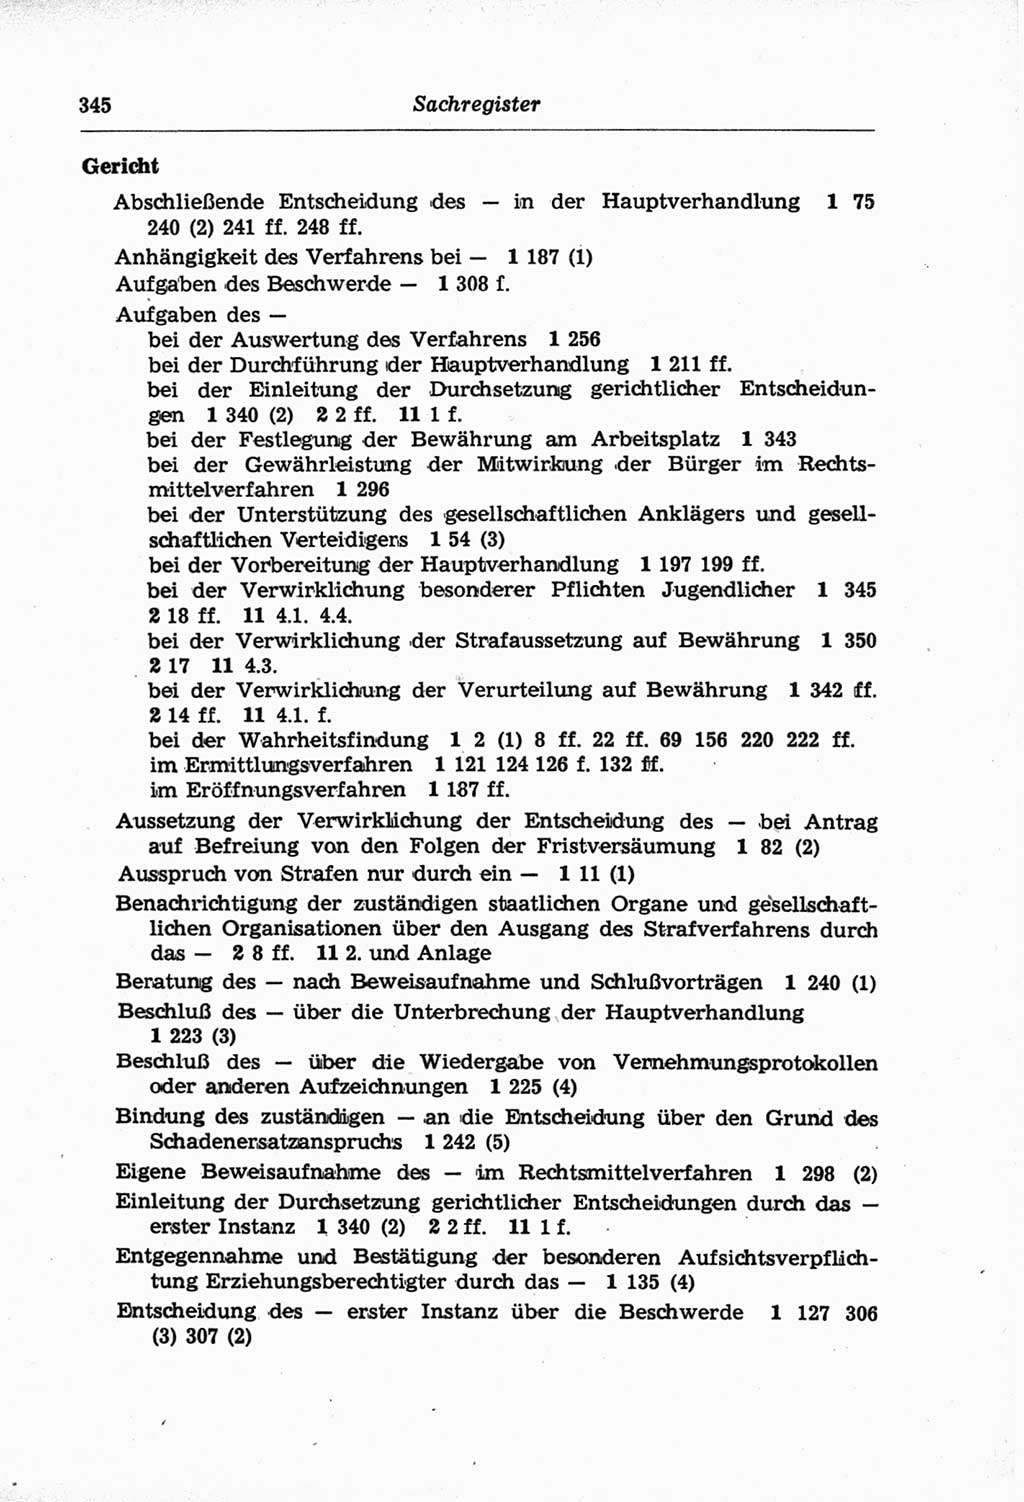 Strafprozeßordnung (StPO) der Deutschen Demokratischen Republik (DDR) und angrenzende Gesetze und Bestimmungen 1968, Seite 345 (StPO Ges. Bstgn. DDR 1968, S. 345)